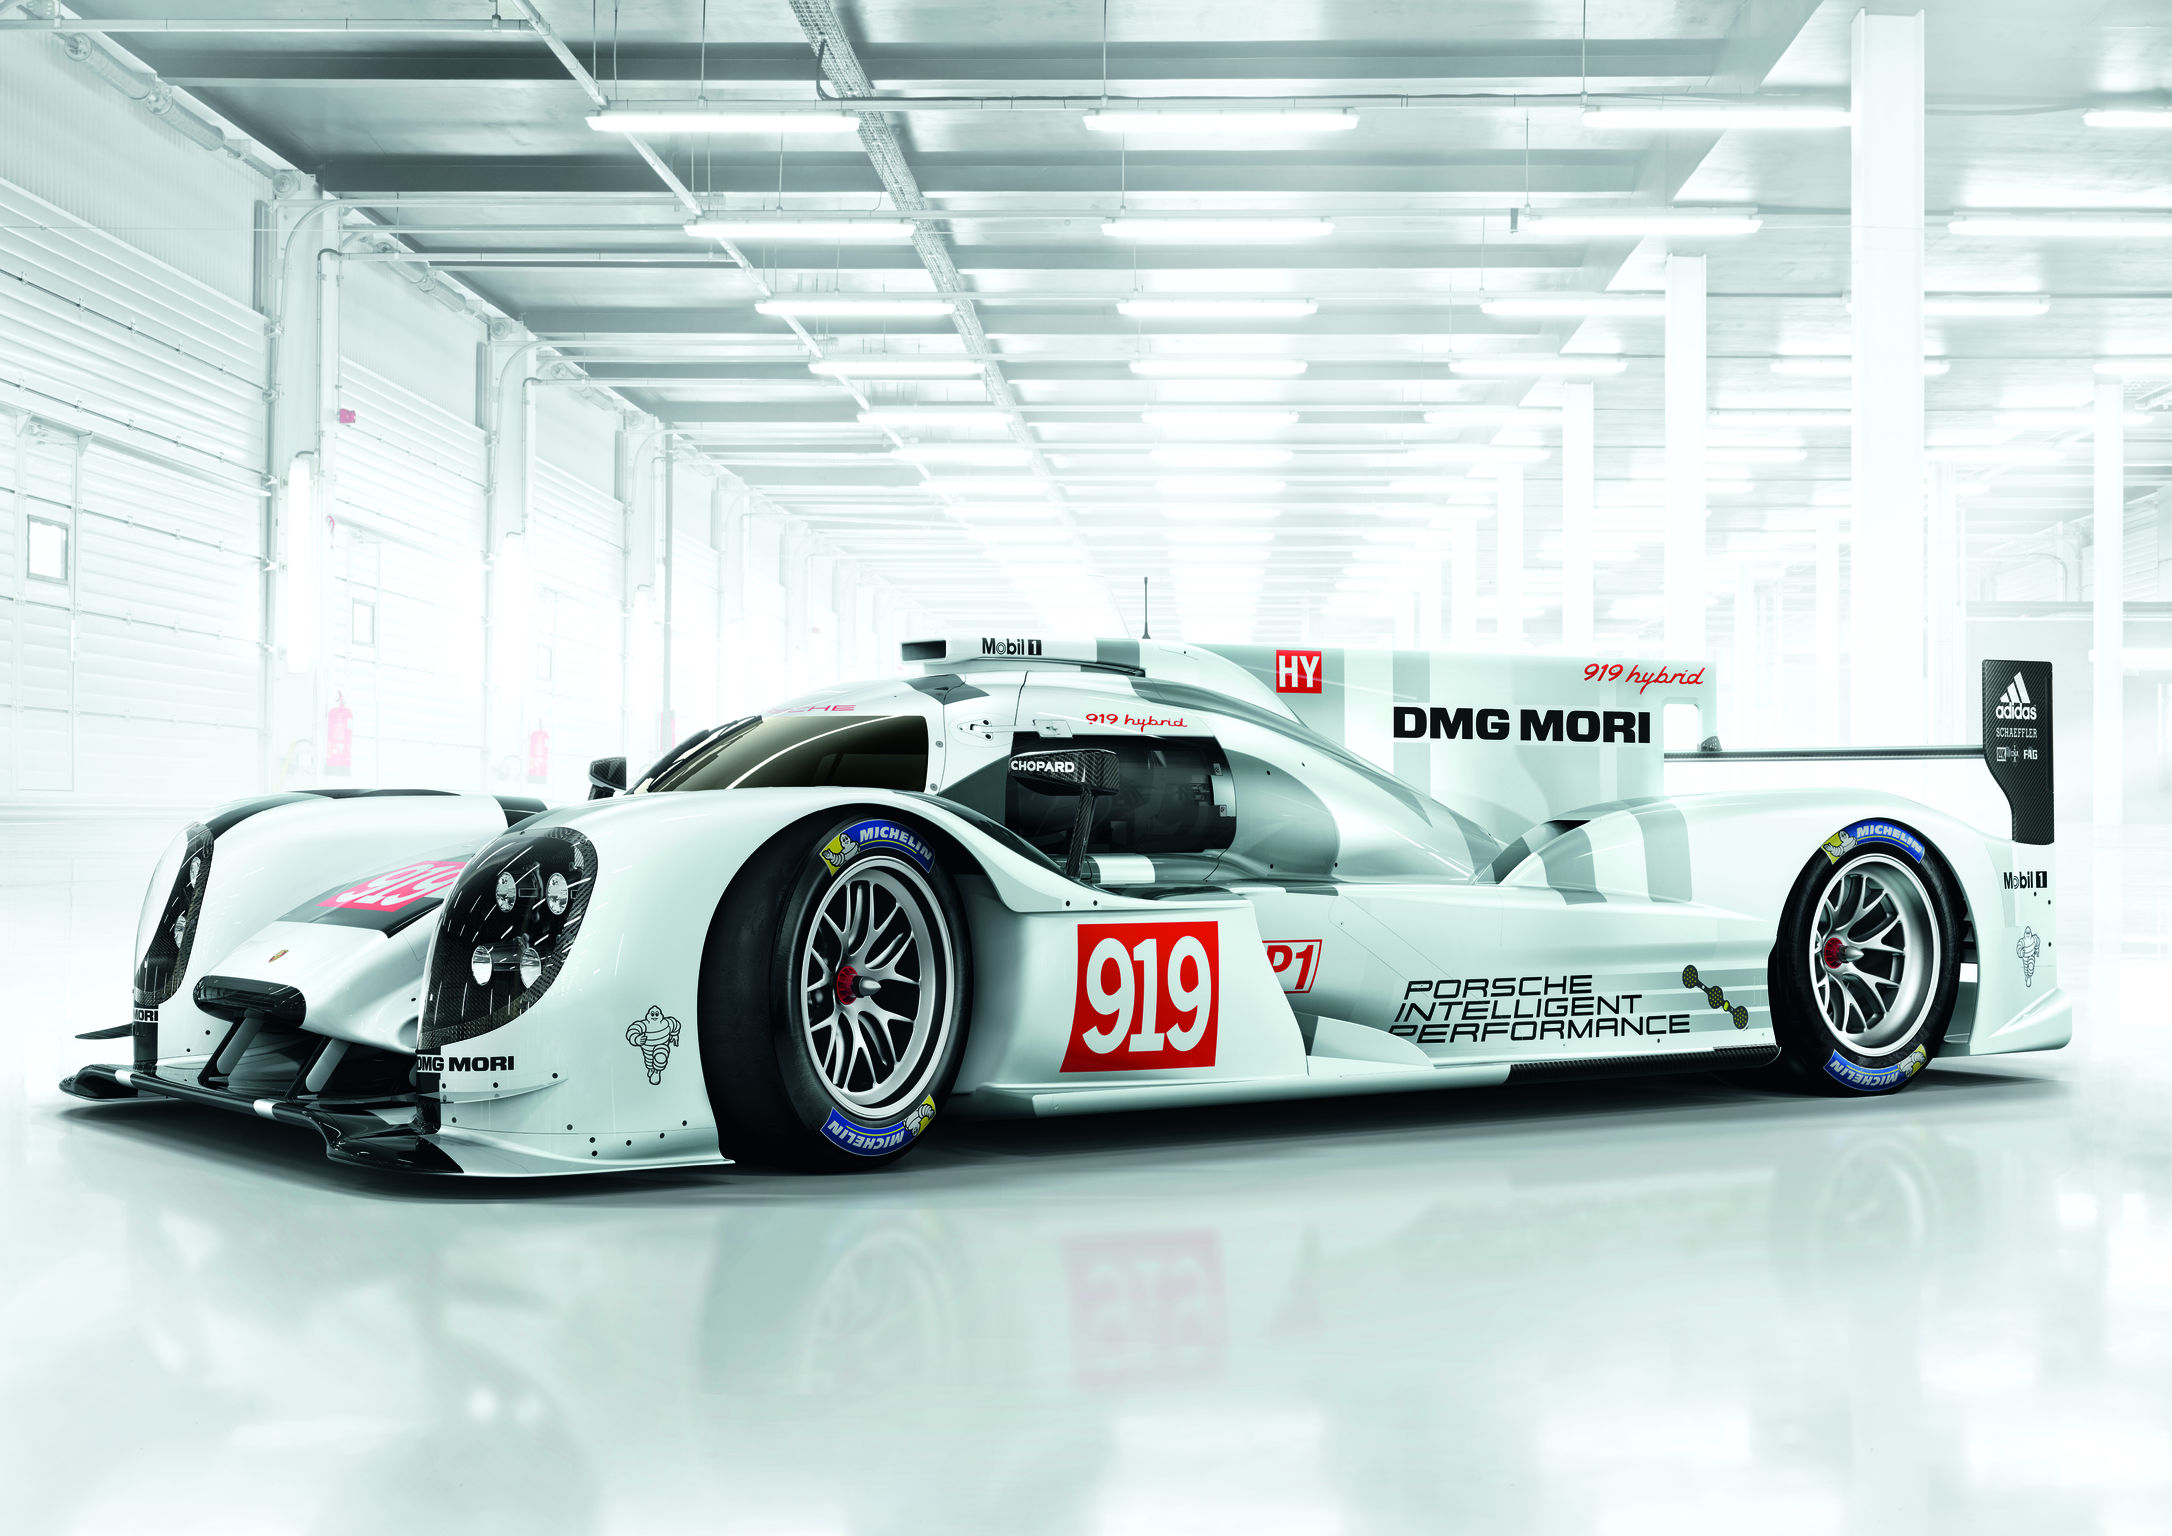 »Porsche Intelligent Performance«